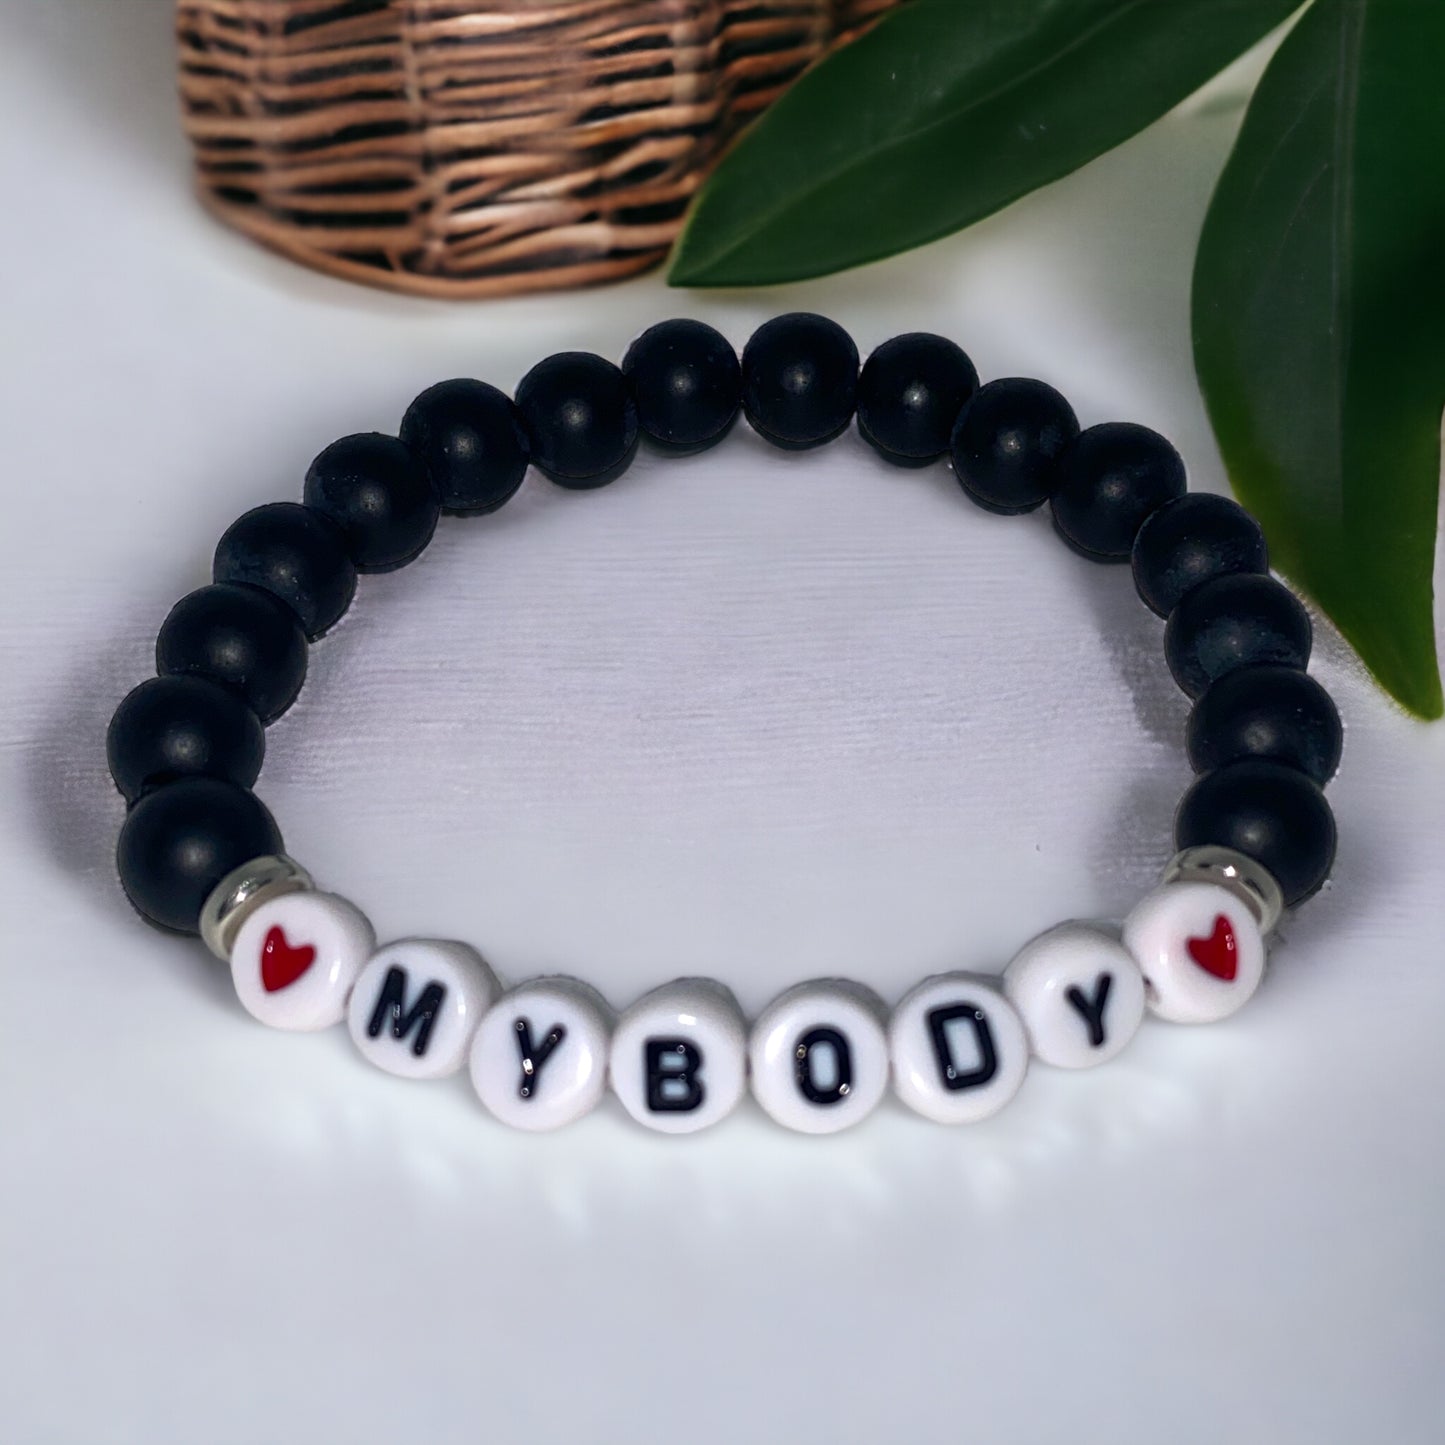 "I Love MyBody" Black Onyx Bracelet